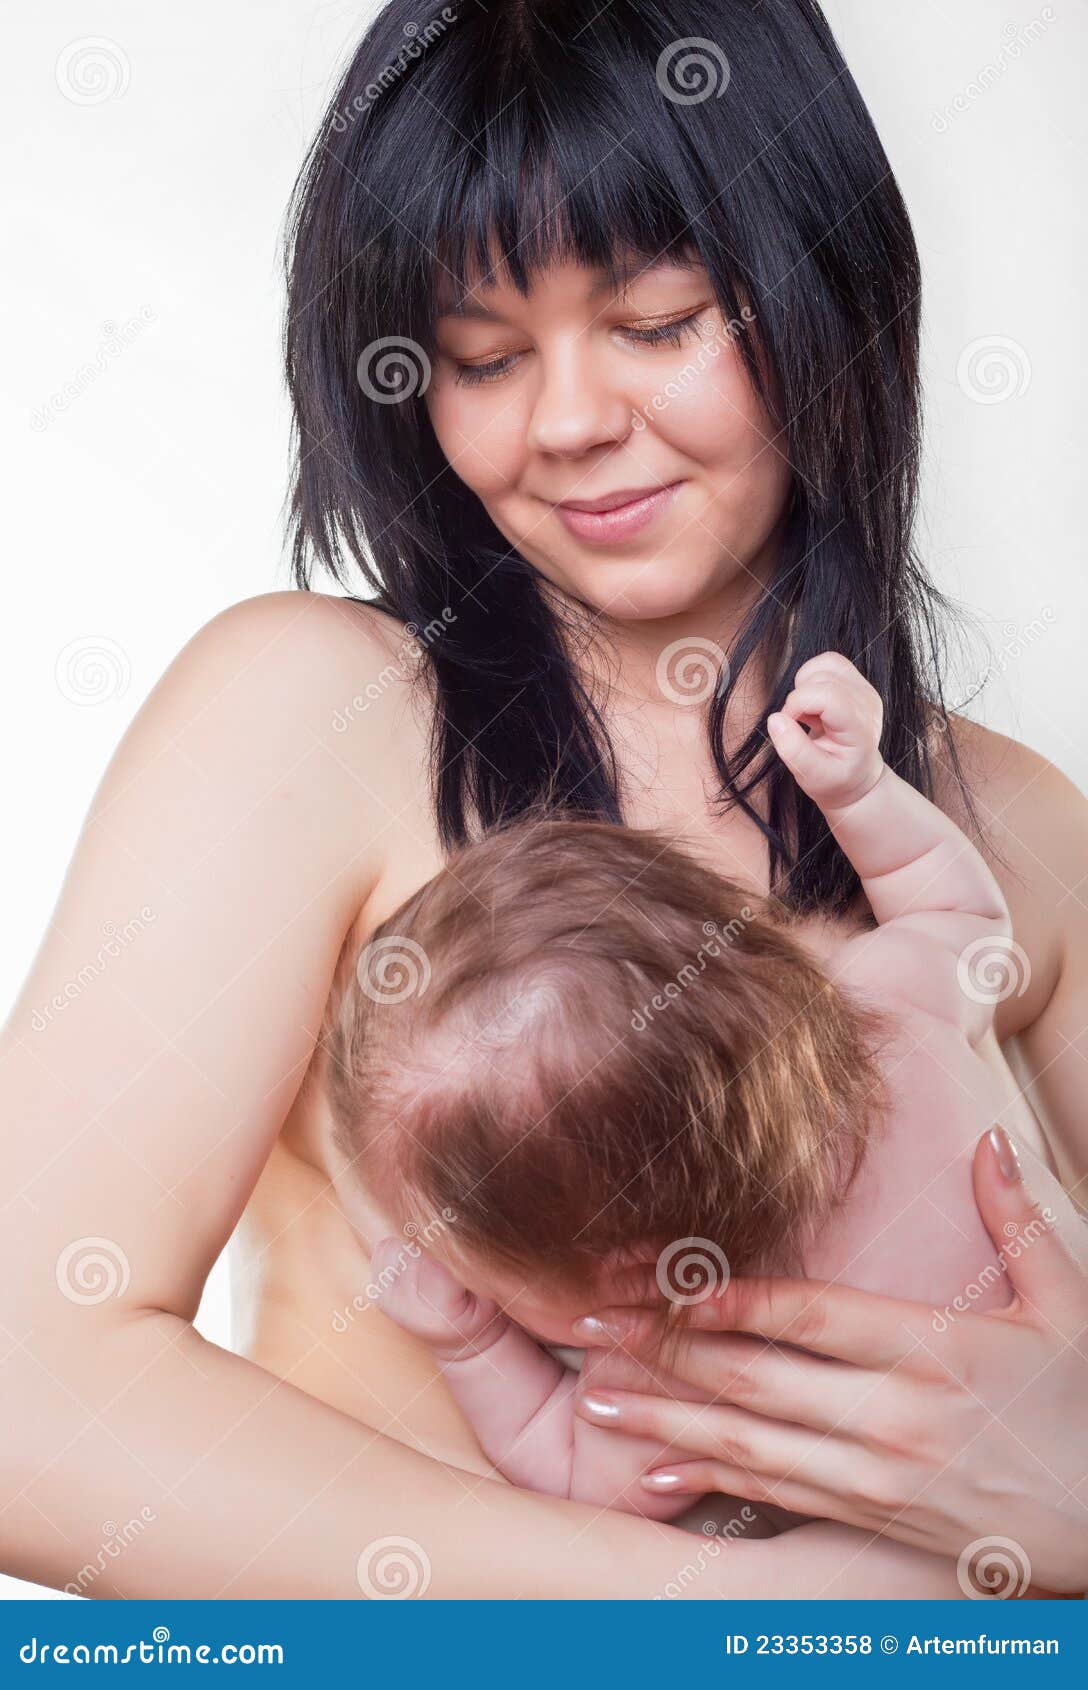 сын держит за грудь маму фото 96